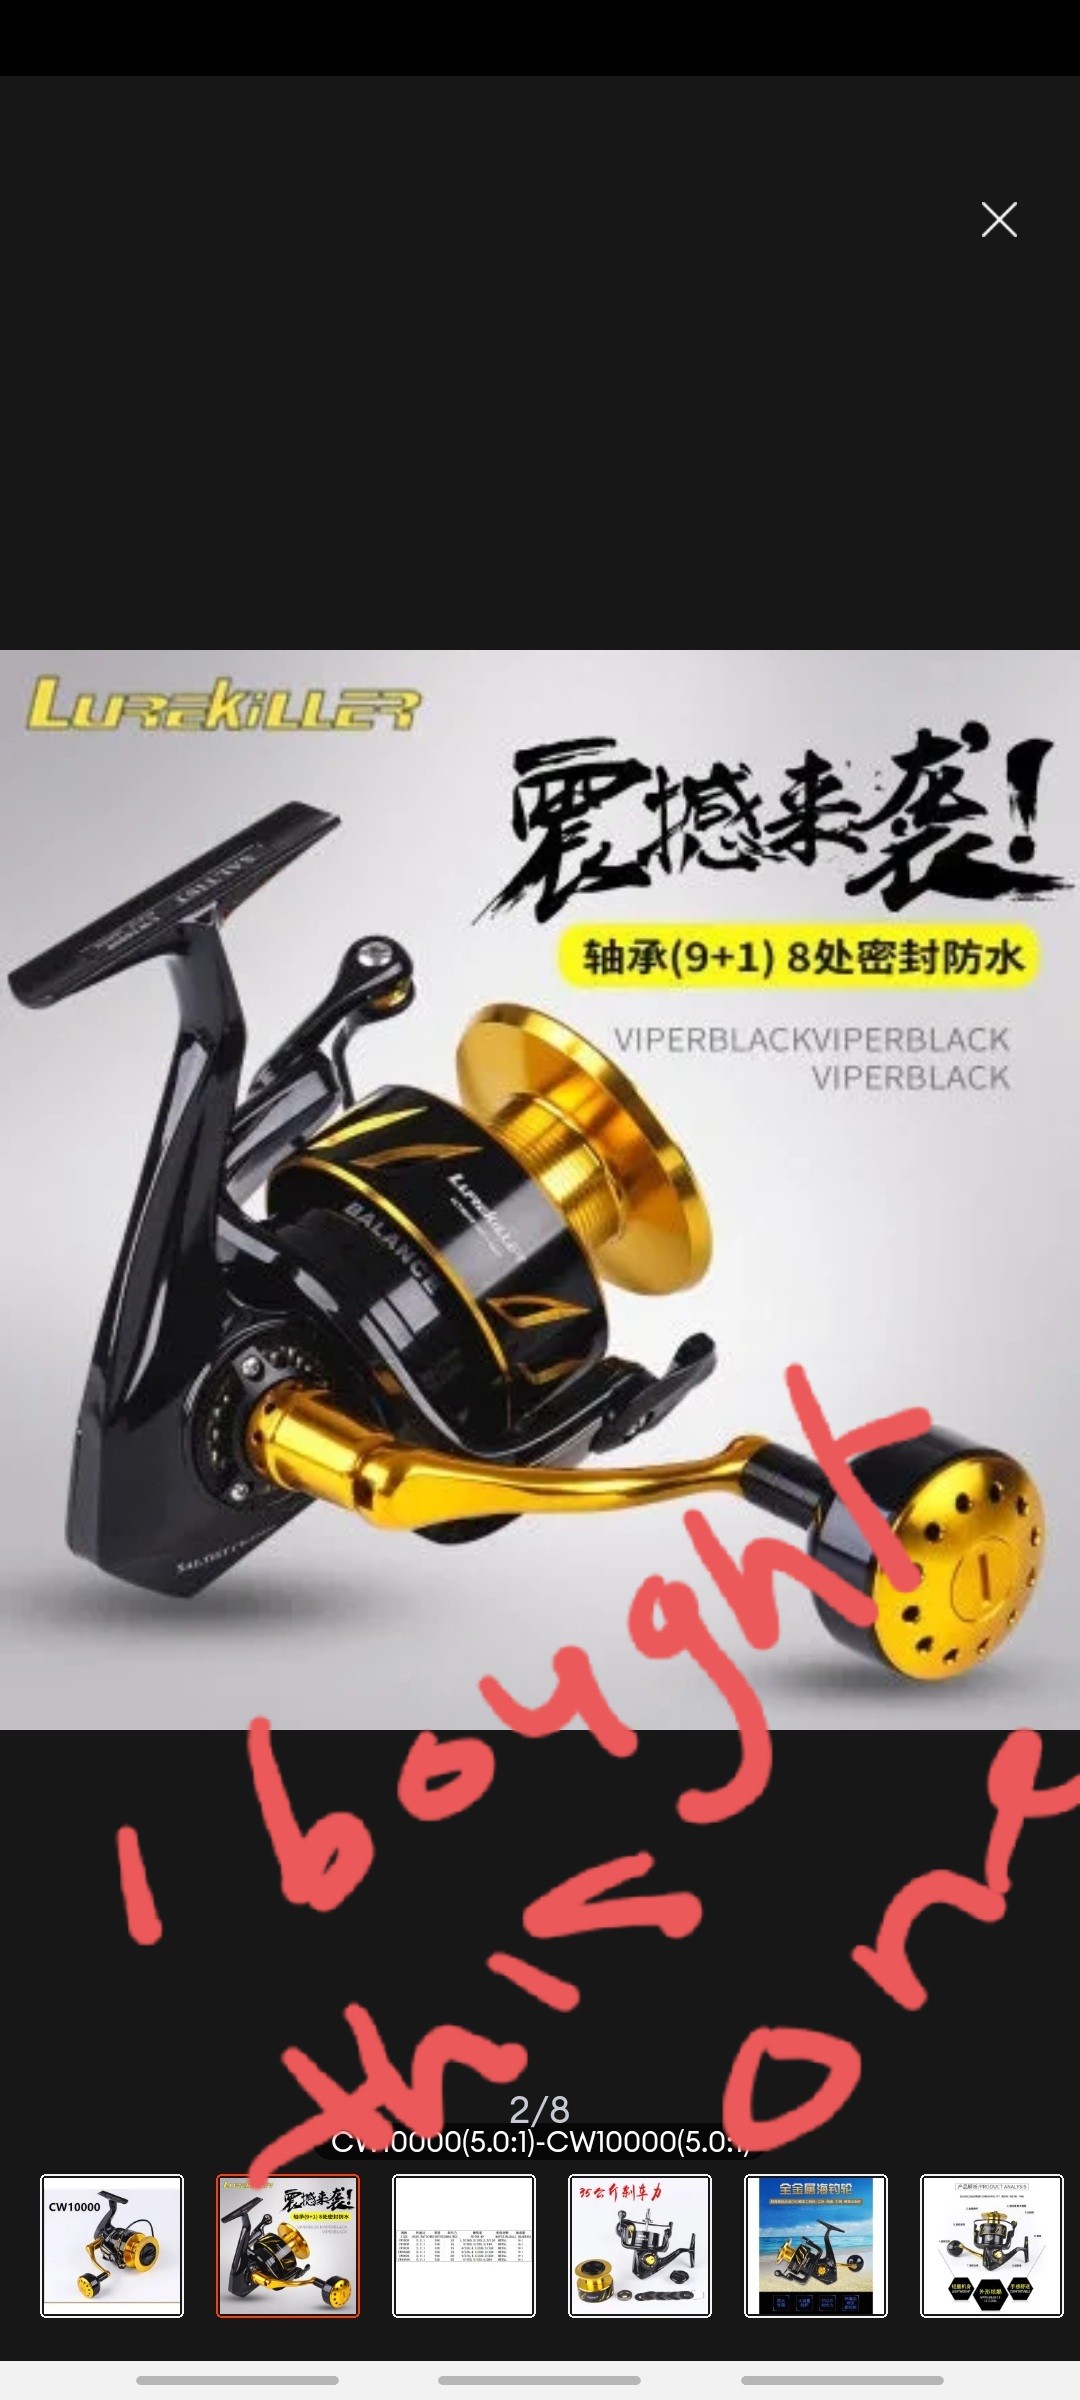 Lurekiller Saltist Japan 3000-10000 series Max drag 35kgs Full Metal  Jigging reel Spinning reel lure fishing reel